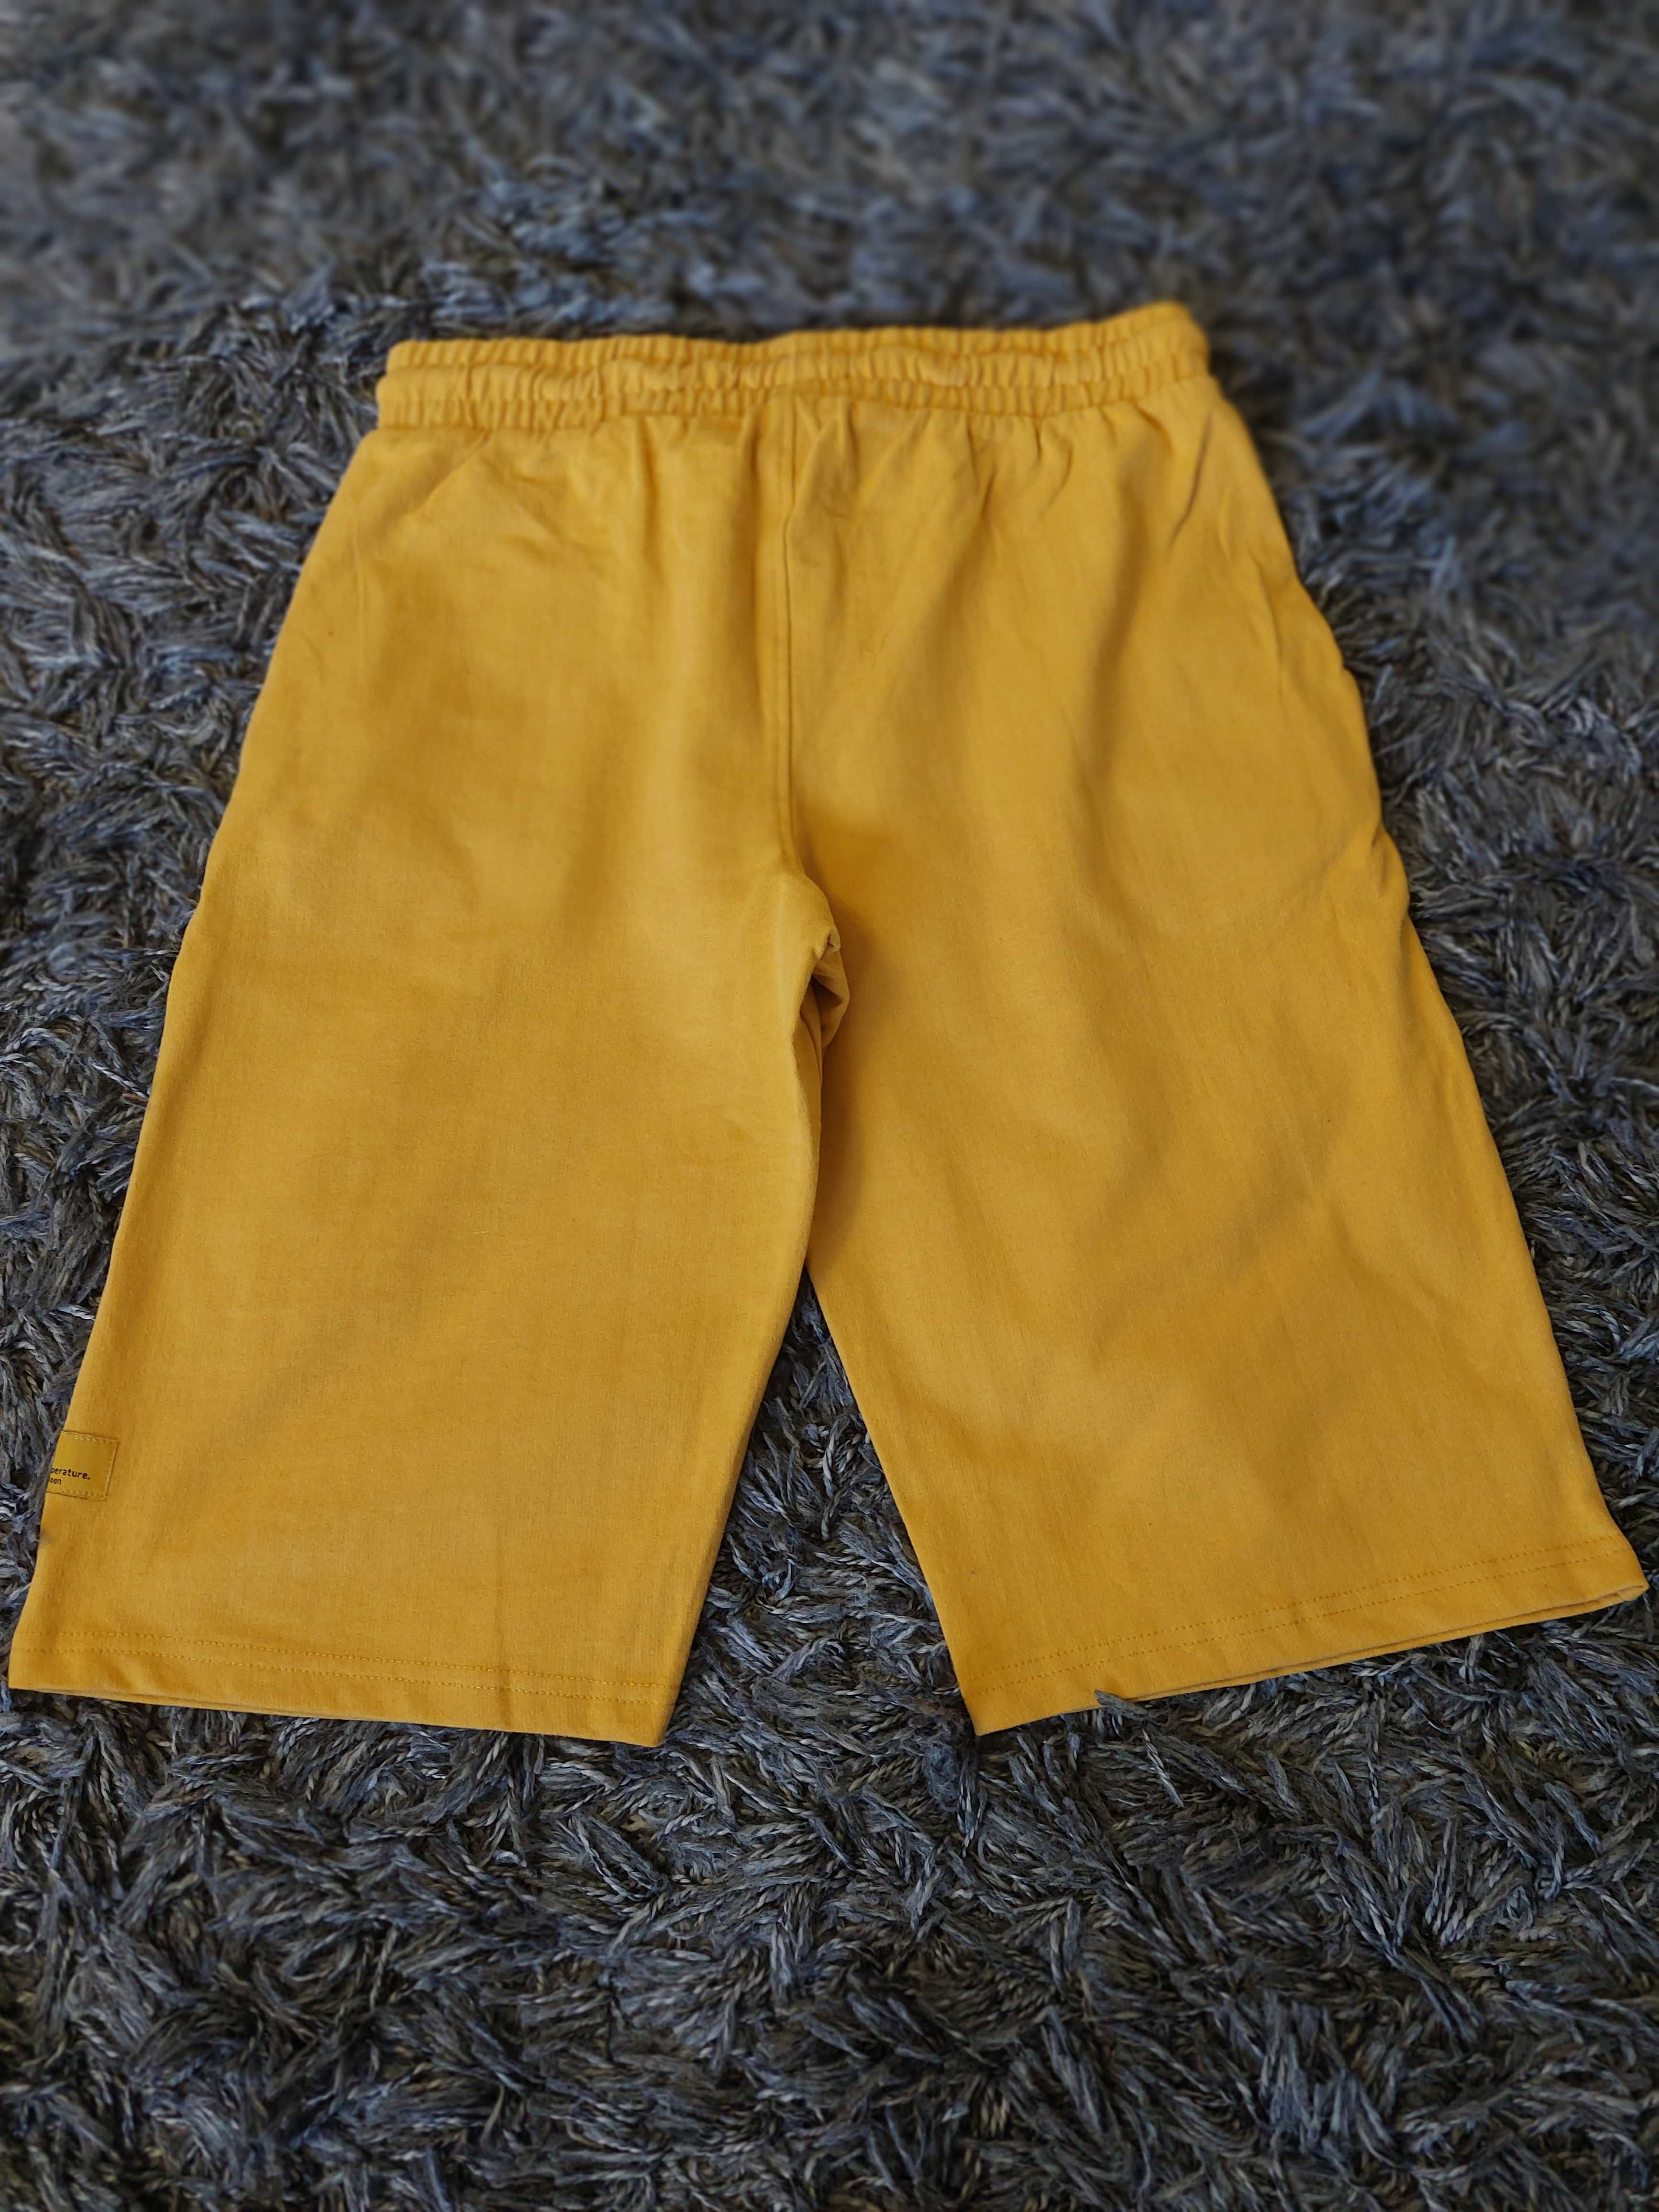 Krótkie spodnie w kolorze żółtym firmy Reporter Young